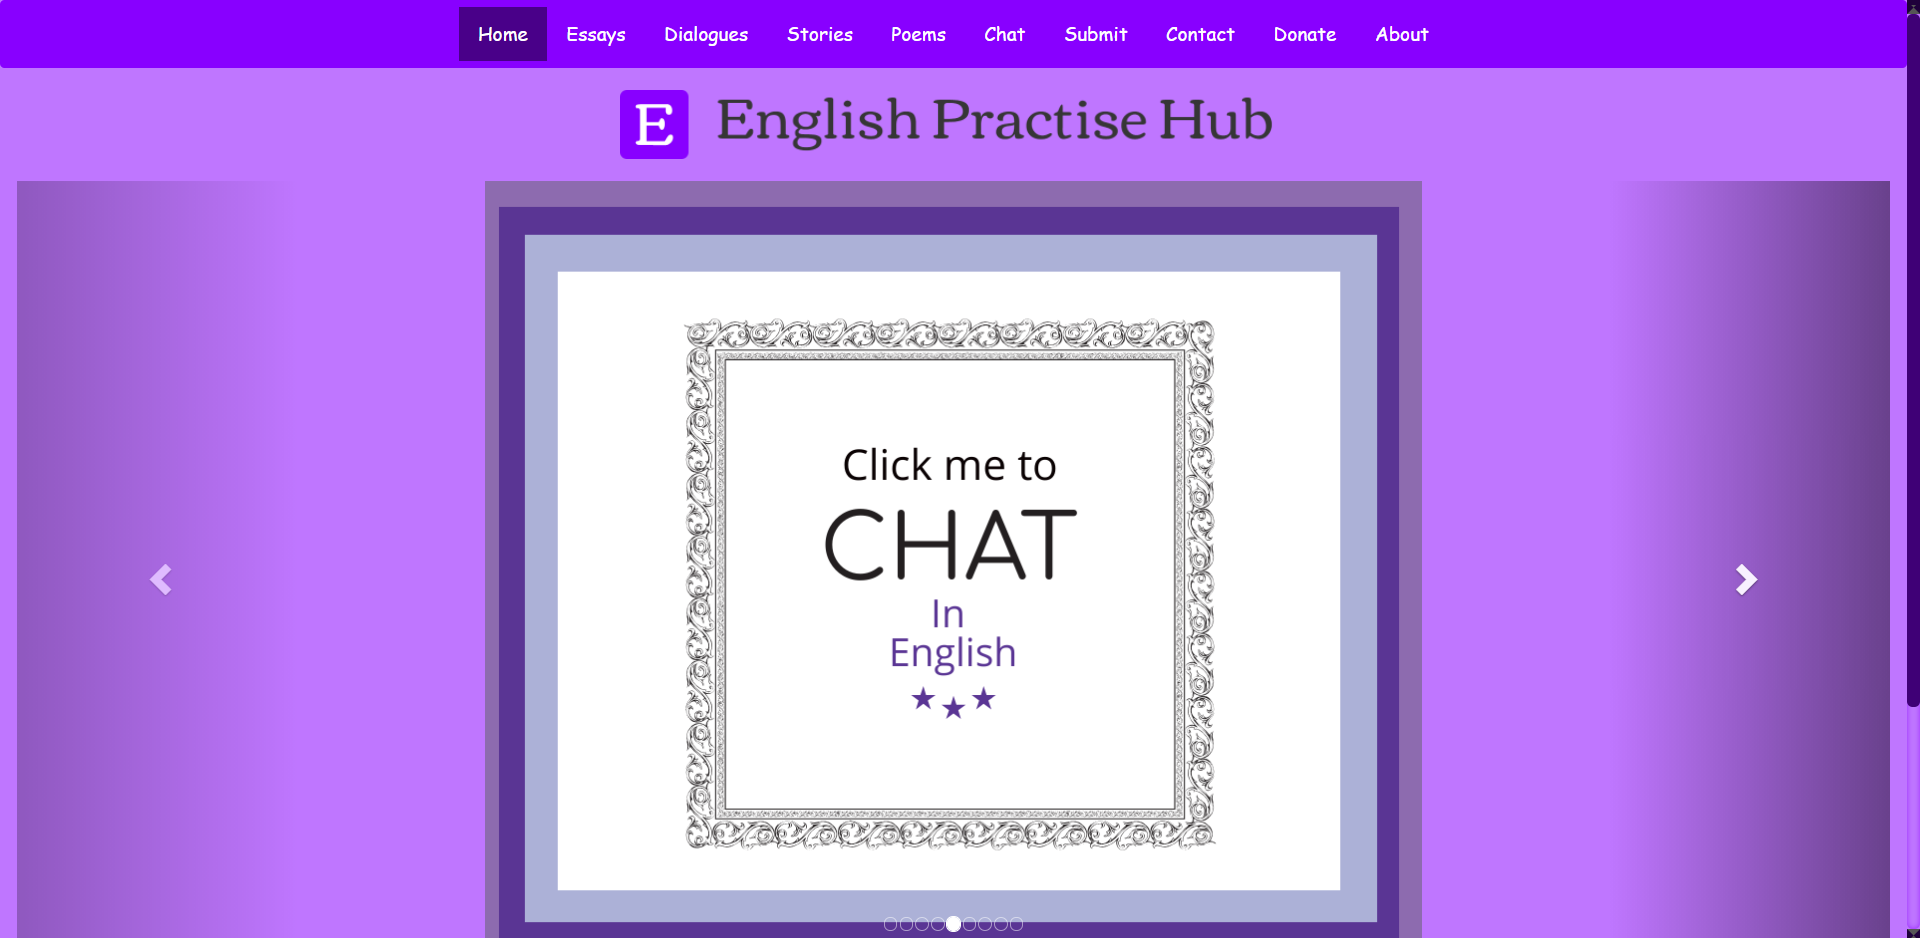 English Practise Hub